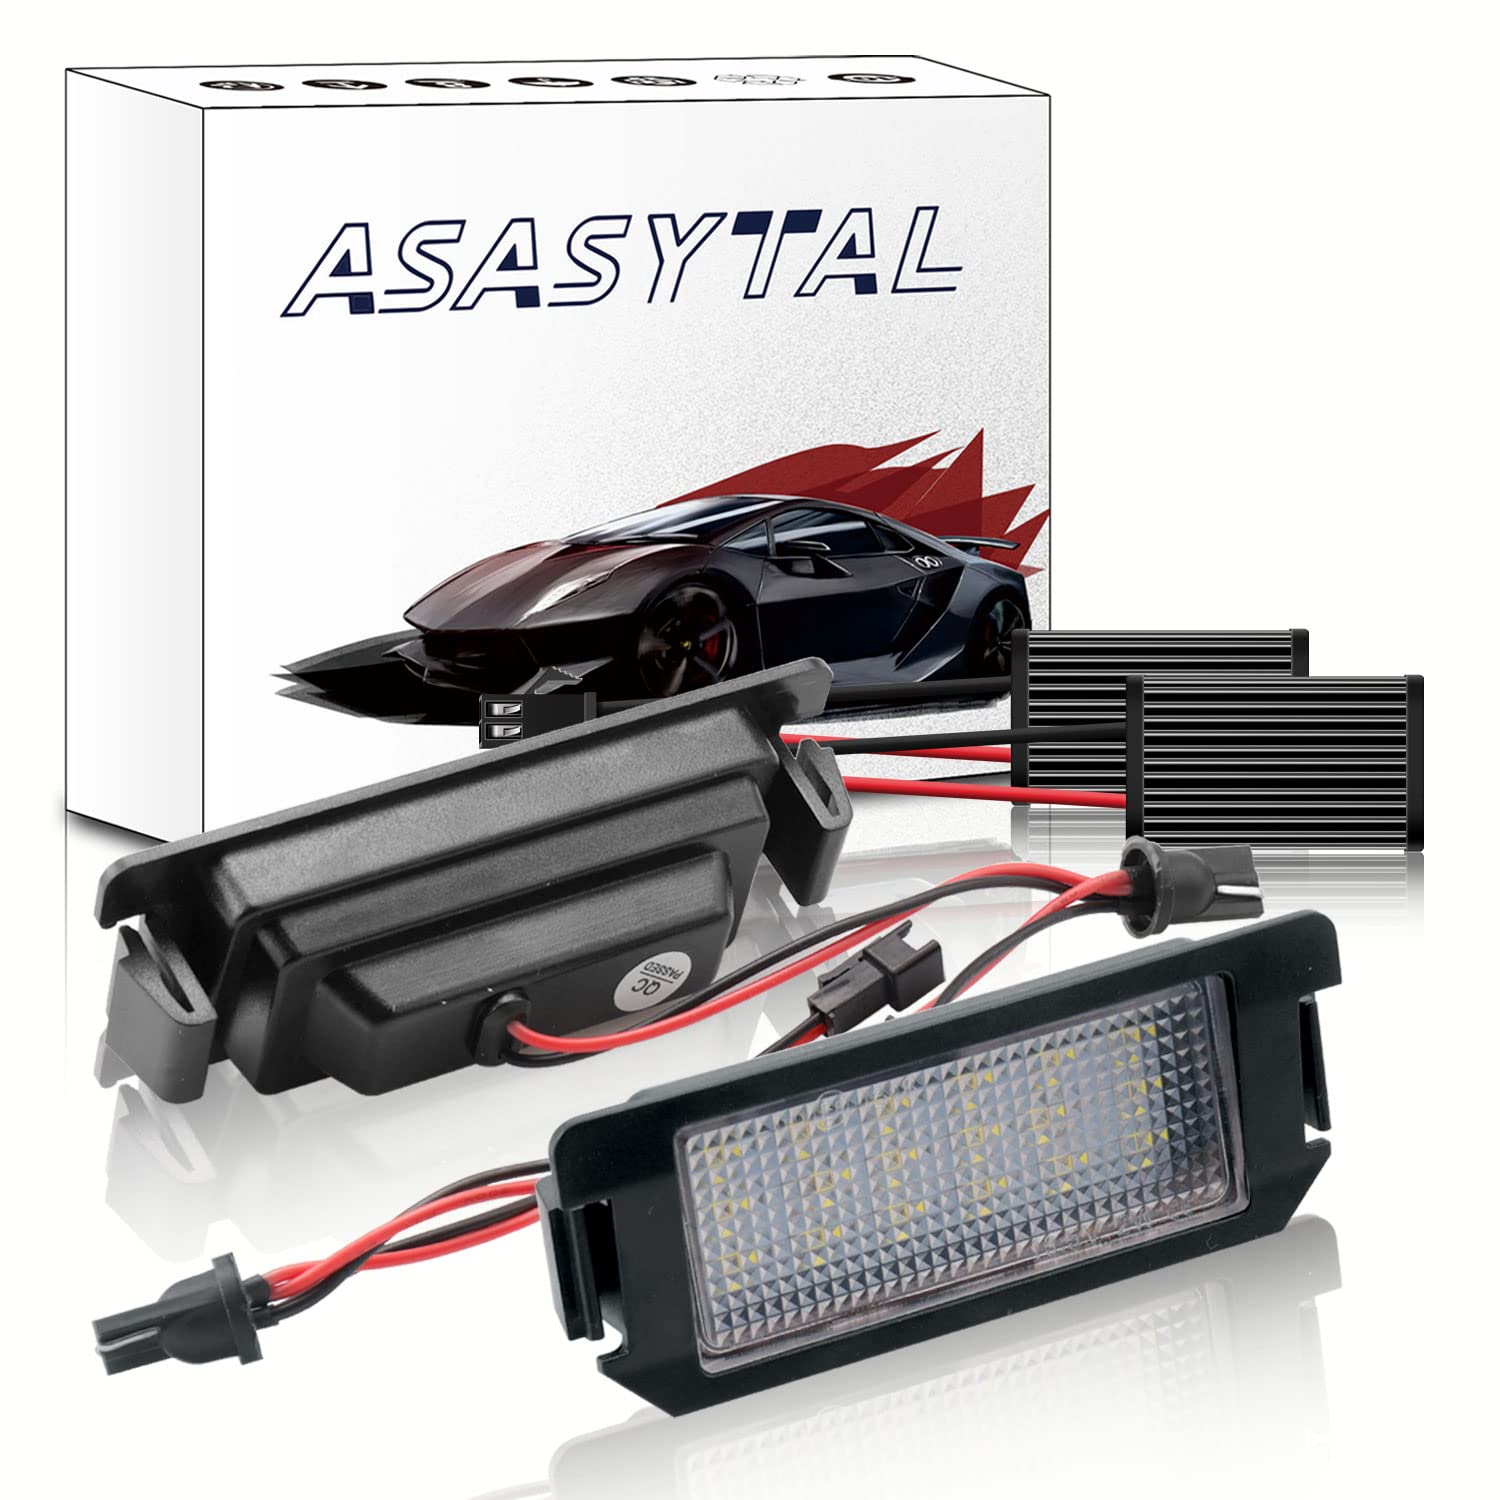 Asasytal LED-Nummernschild hinten Birne SMD Lampe, Superhelles Weiß Canbus Kennzeichenbeleuchtung Kompatibel mit Hyundai Ve-loster Genesis Coupe Ki-a Soul, 2 Lampen von Asasytal